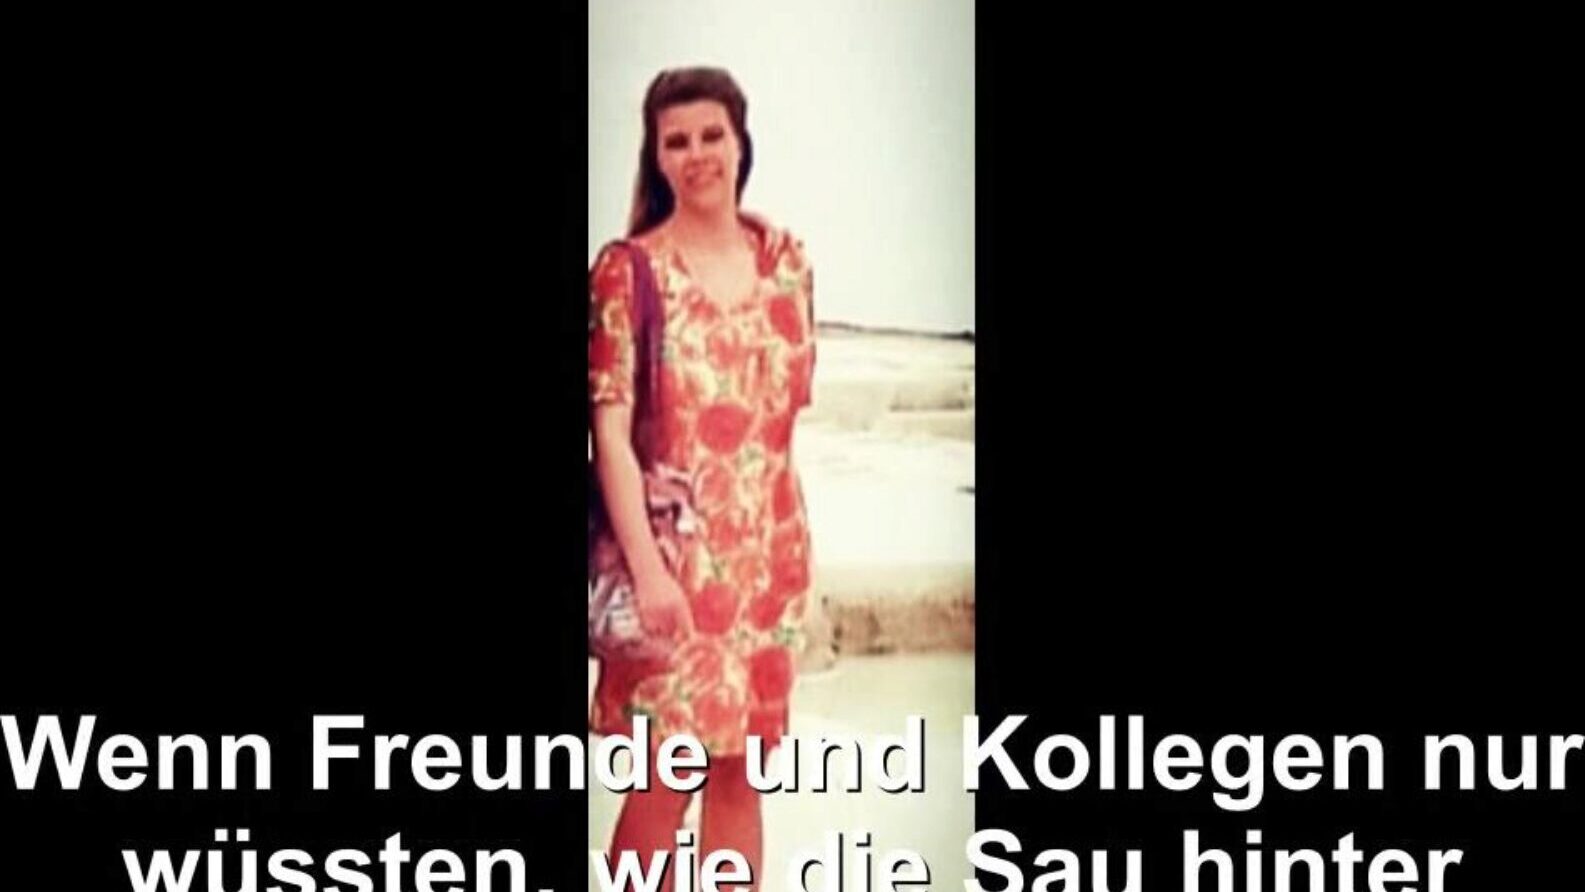 Duitse huisvrouw blootgesteld, gratis buis Duitse hd porno bd bekijk Duitse huisvrouw blootgestelde filmscène op xhamster, de grootste hd vrijen tube website met tonnen gratis buis Duitse Duitse vrouw & zelfgemaakte porno filmscènes